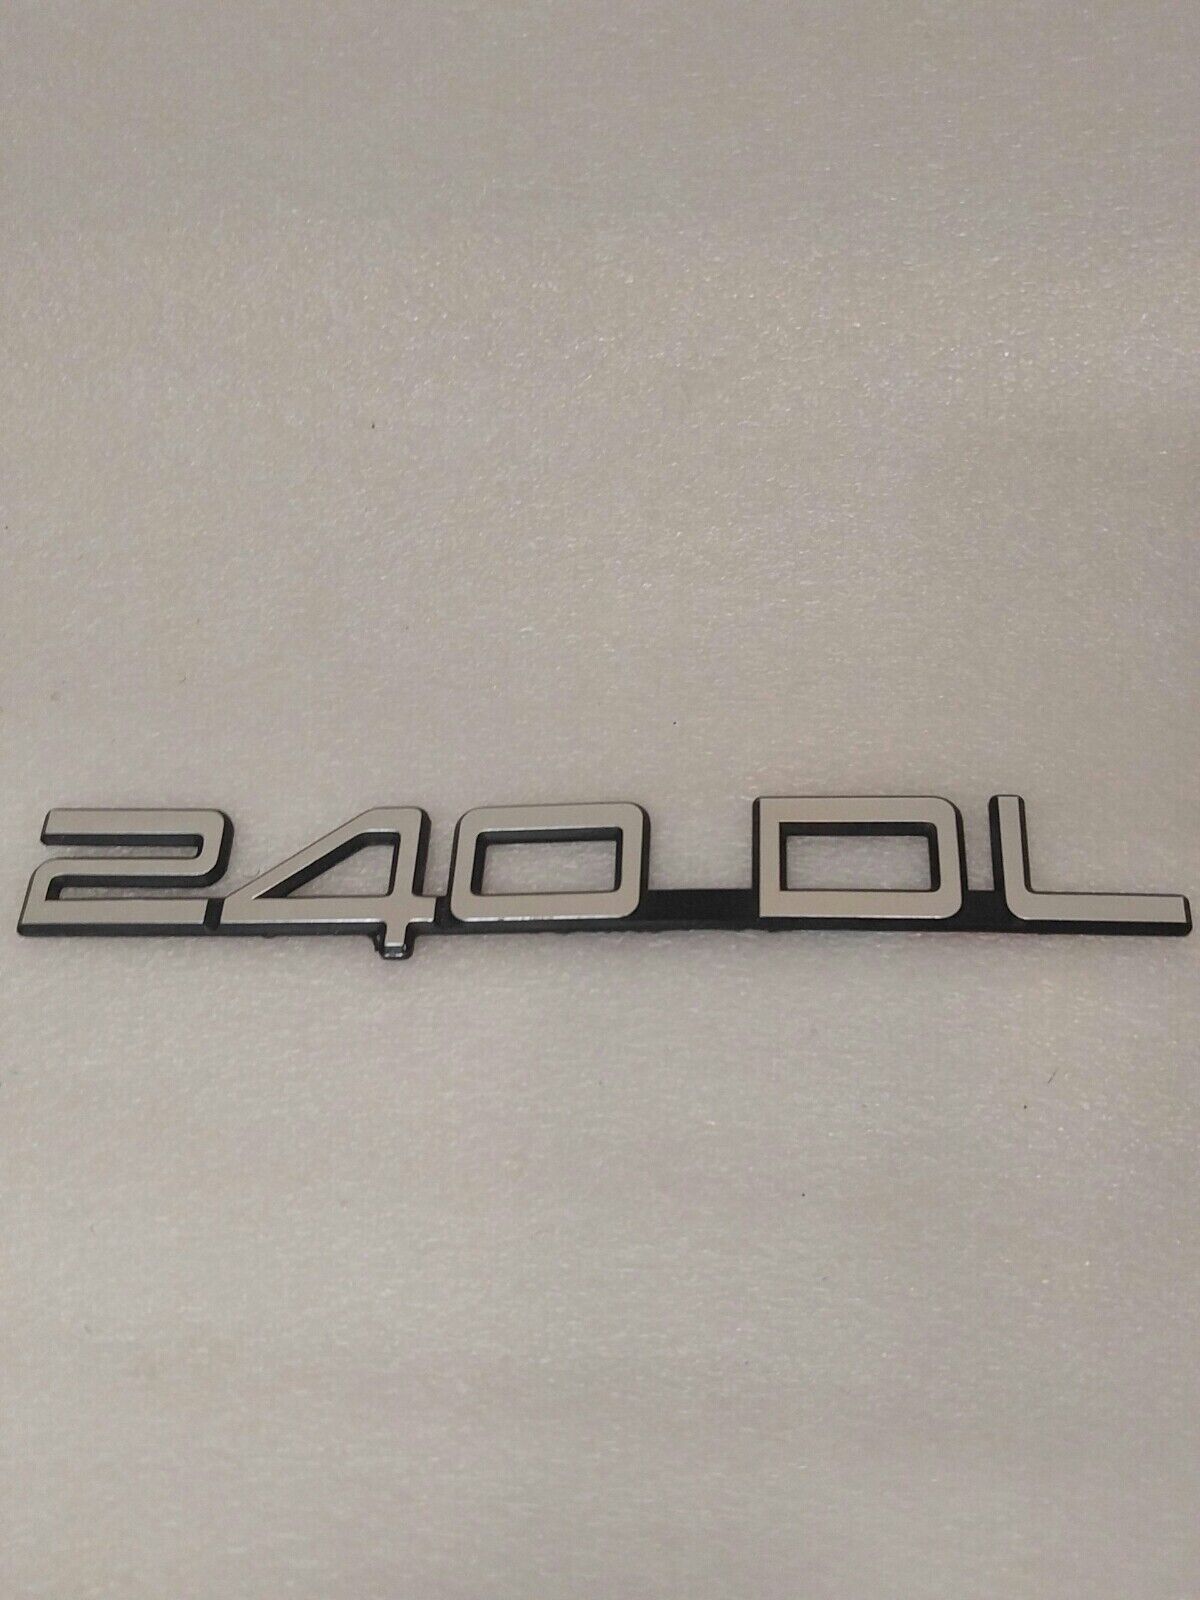 240DL Volvo 240 DL Emblem Logo Letters Badge  